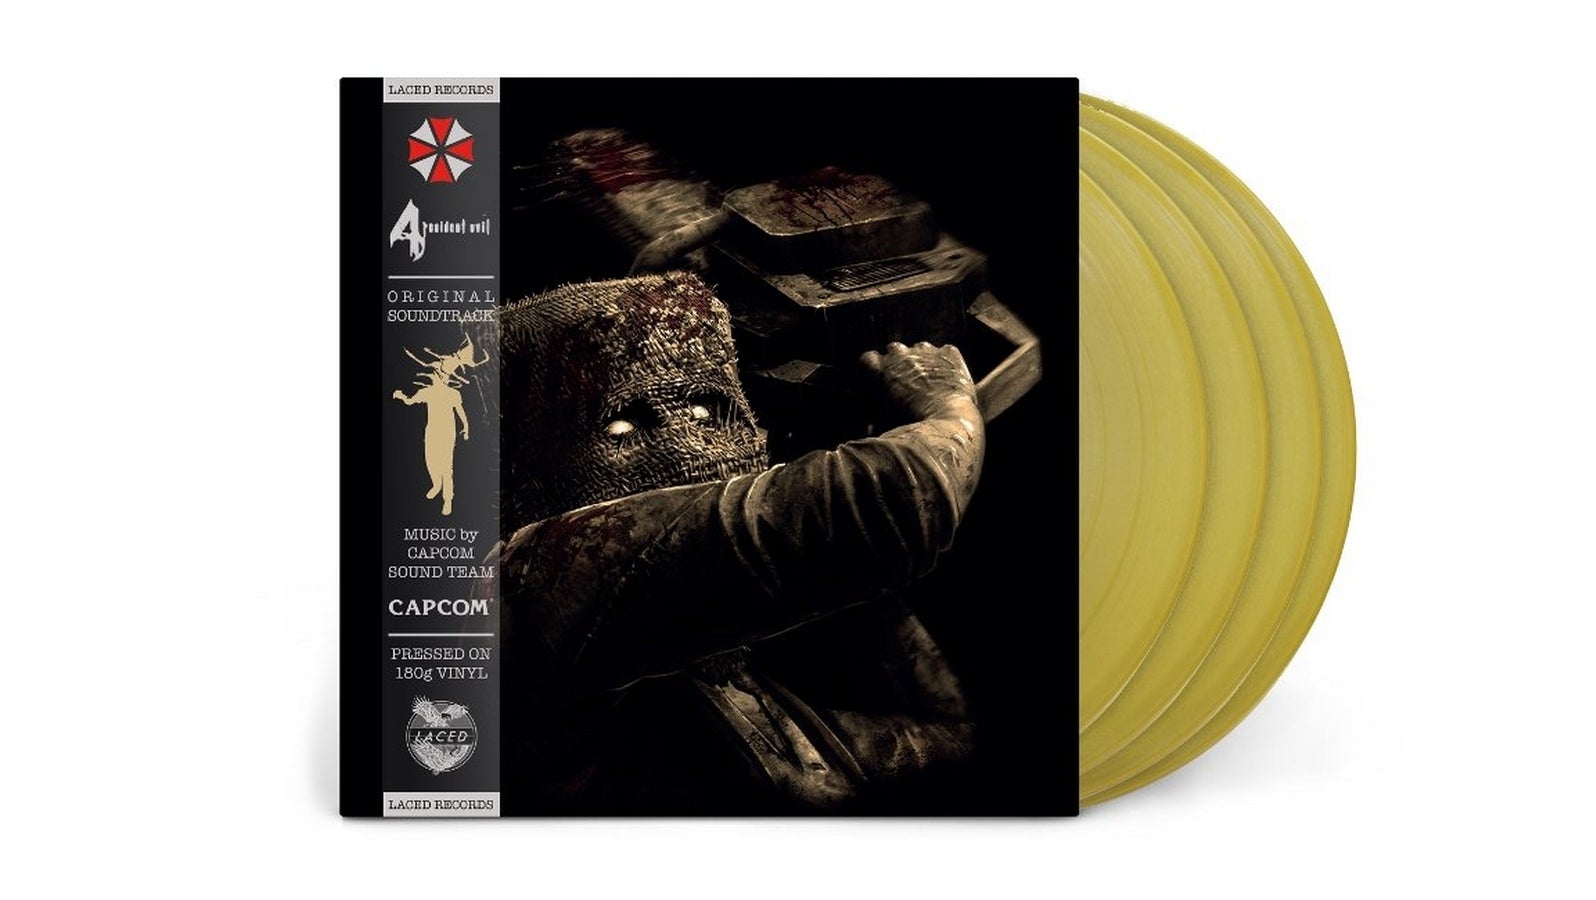 Bilder zu Der Soundtrack von Resident Evil 4 erscheint auf Vinyl